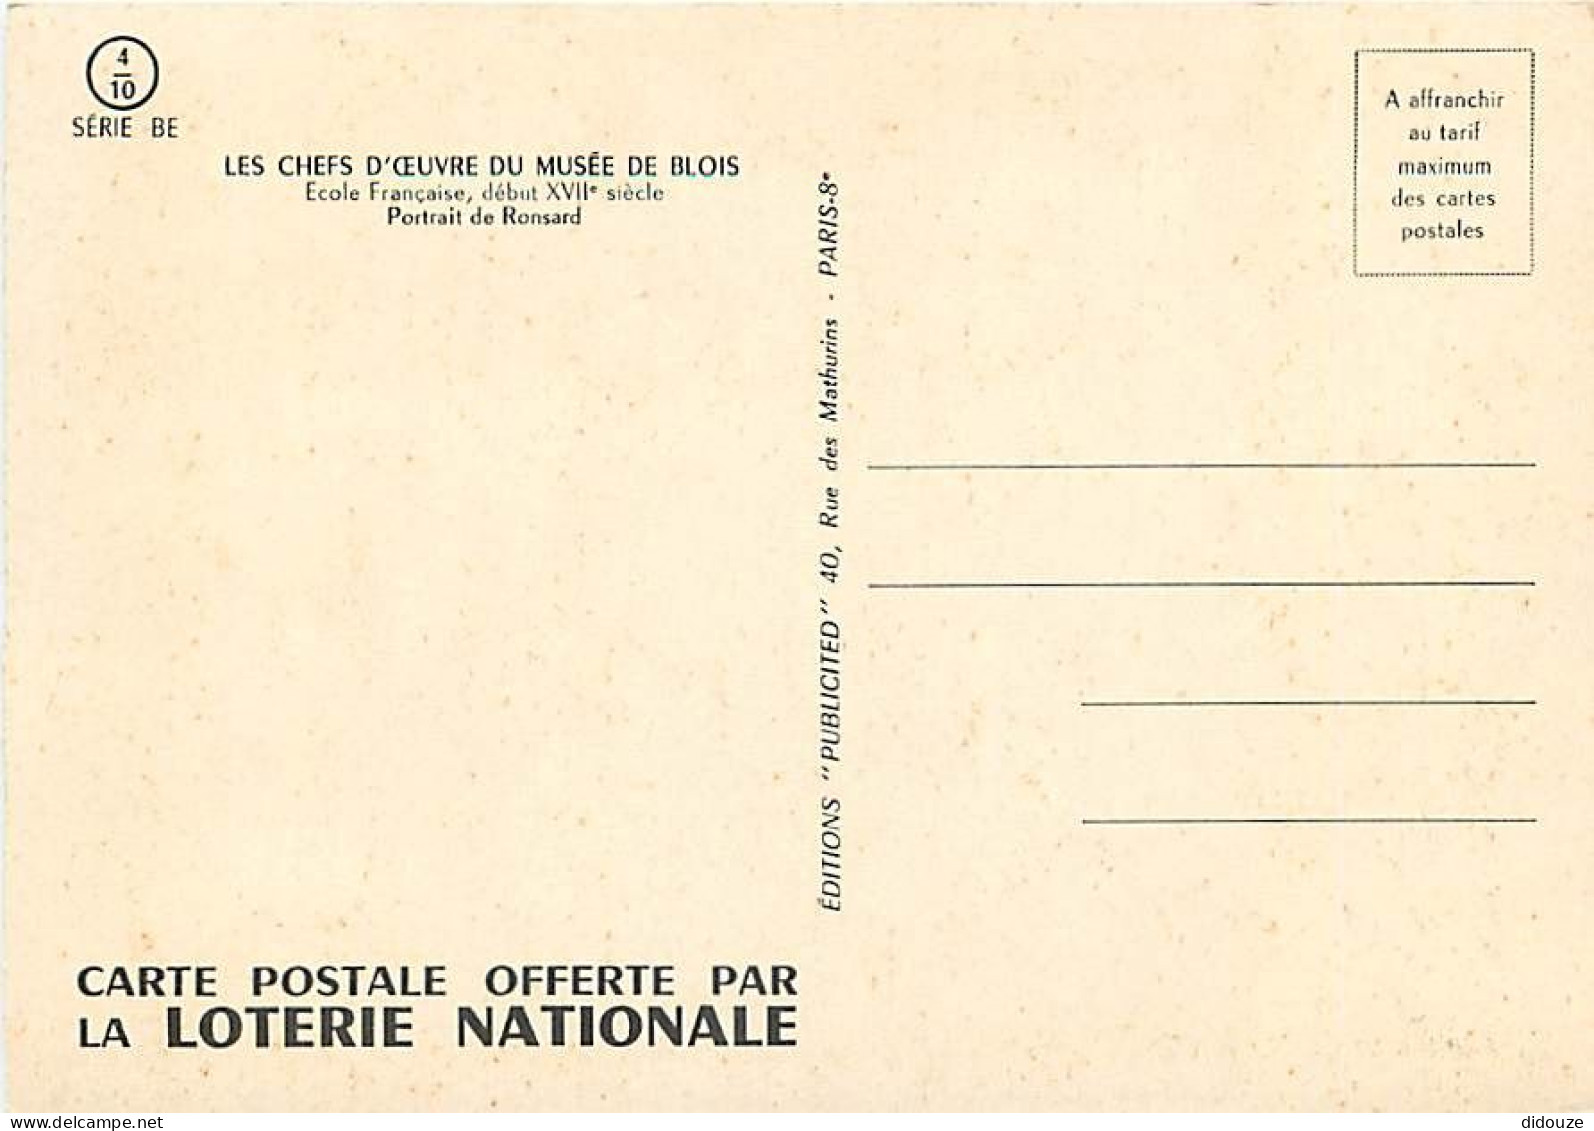 Art - Peinture - Histoire - Ecole Française - Portrait De Ronsard - Carte De La Loterie Nationale - Carte Neuve - CPM -  - Geschichte